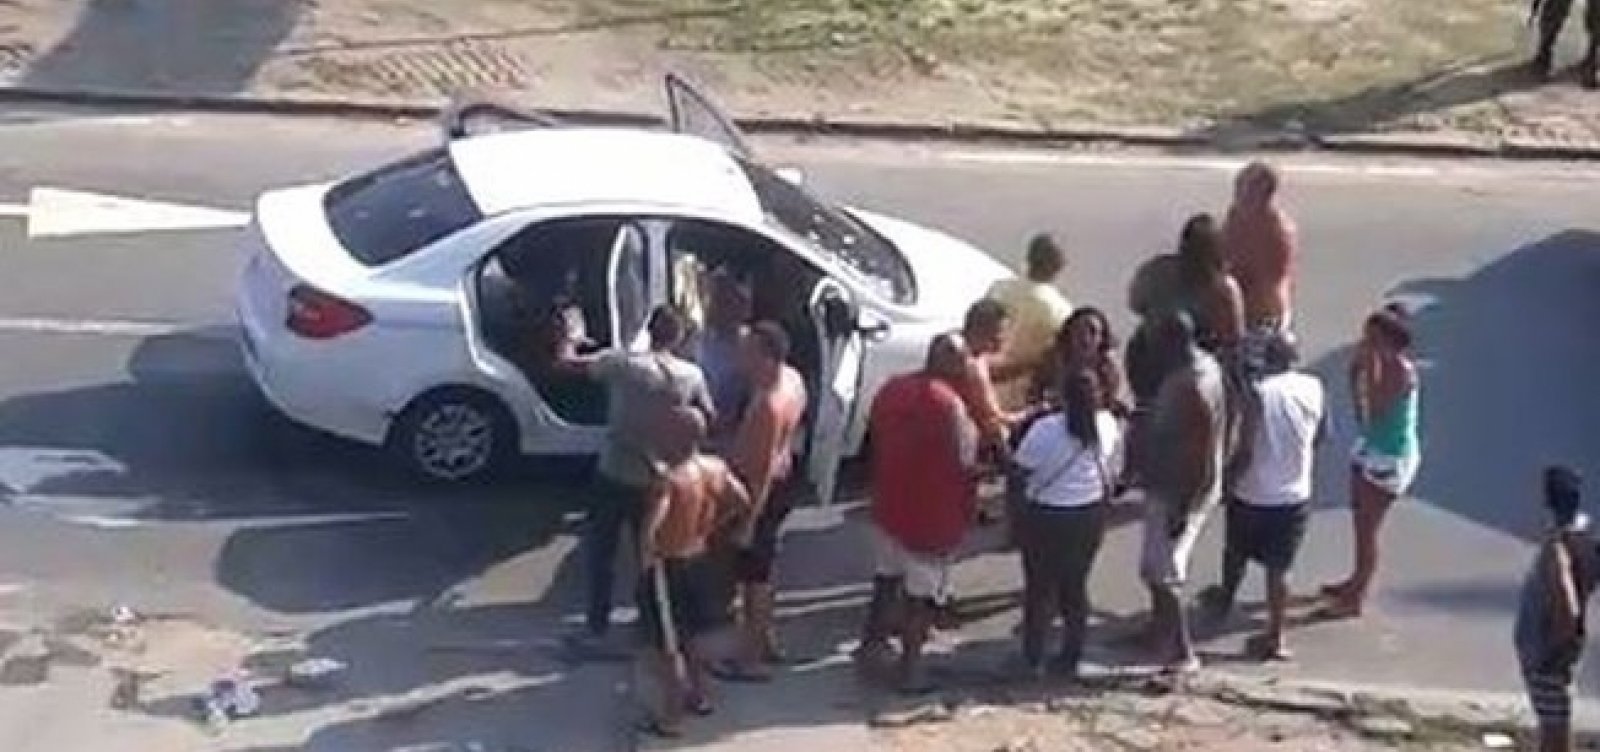 "Ficaram de deboche", diz viúva sobre soldados que fuzilaram carro no Rio